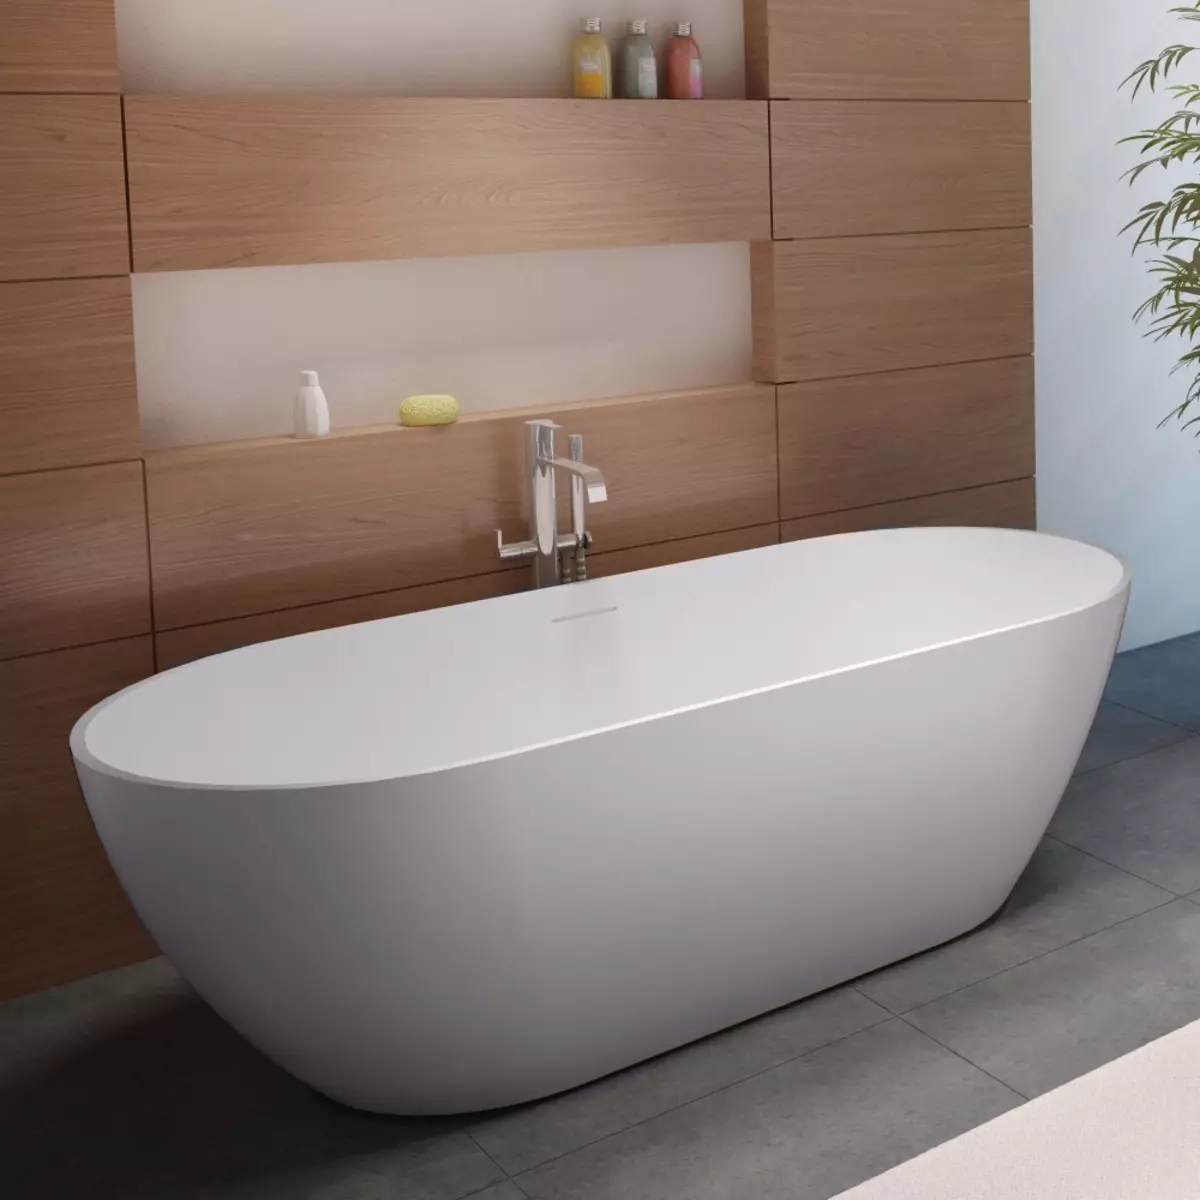 स्नानगृह डिझाइन 5 केव्ही. एम (111 फोटो): वॉशिंग मशीनसह आधुनिक इंटीररमध्ये सुंदर बाथरुमचे 5 स्क्वेअर मीटरचे प्रकल्प 10205_77